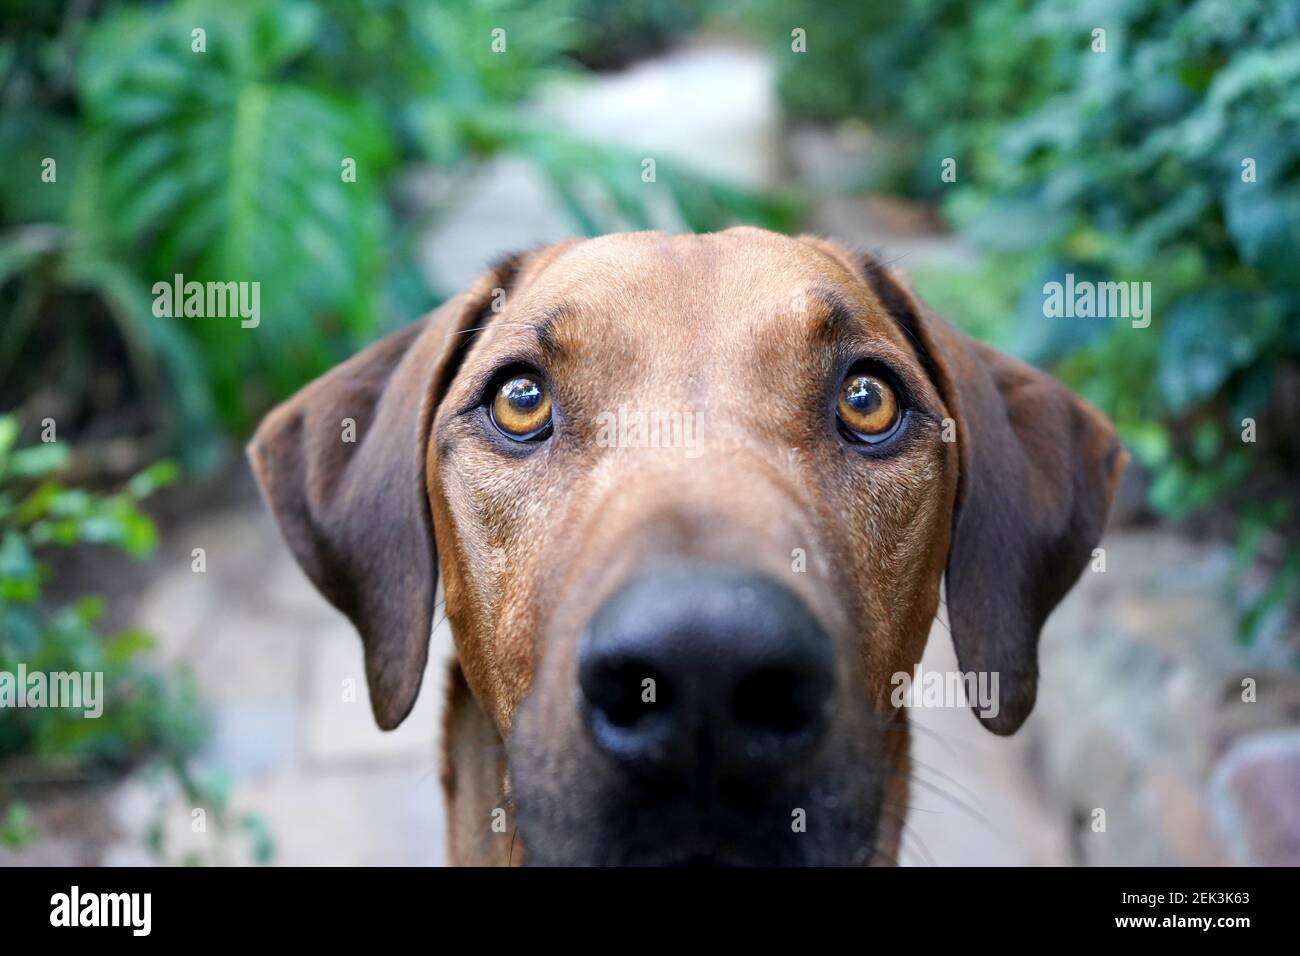 Gros plan d'un gros chien marron regardant l'appareil photo Banque D'Images